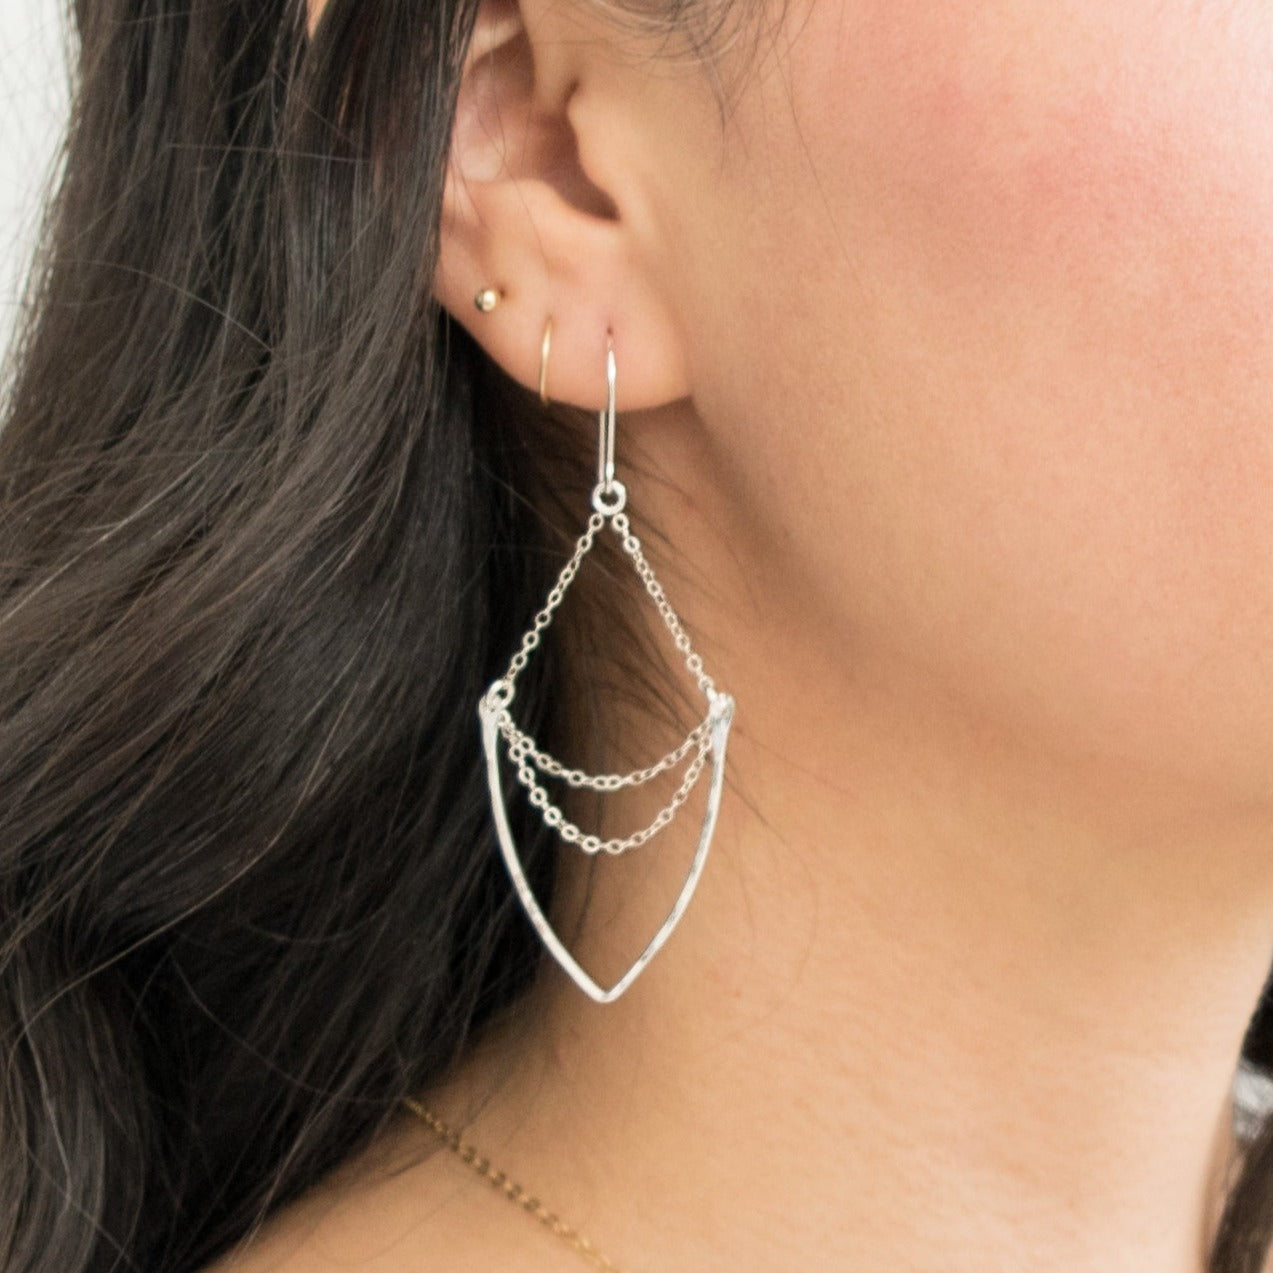 Orange Crystal Multi Shaped Stone Chandelier Earrings | Statement Earrings  | L&M Bling - lmbling